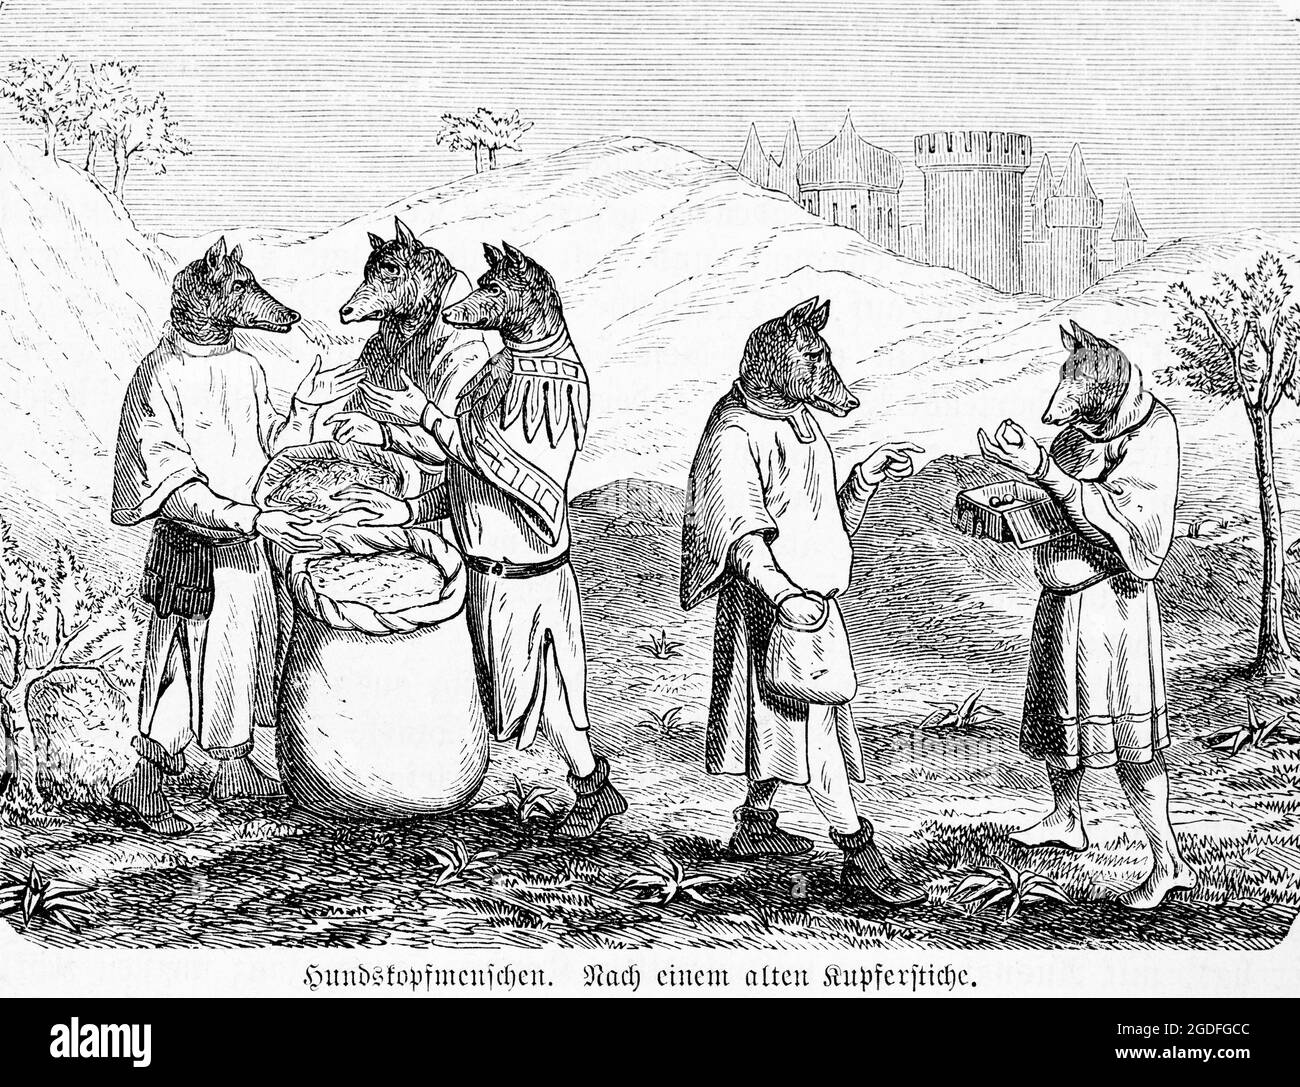 Des humains à tête de chien, cynologues, censés vivre dans le nord de l'Inde selon un vieux mythe, illustration historique 1881 Banque D'Images